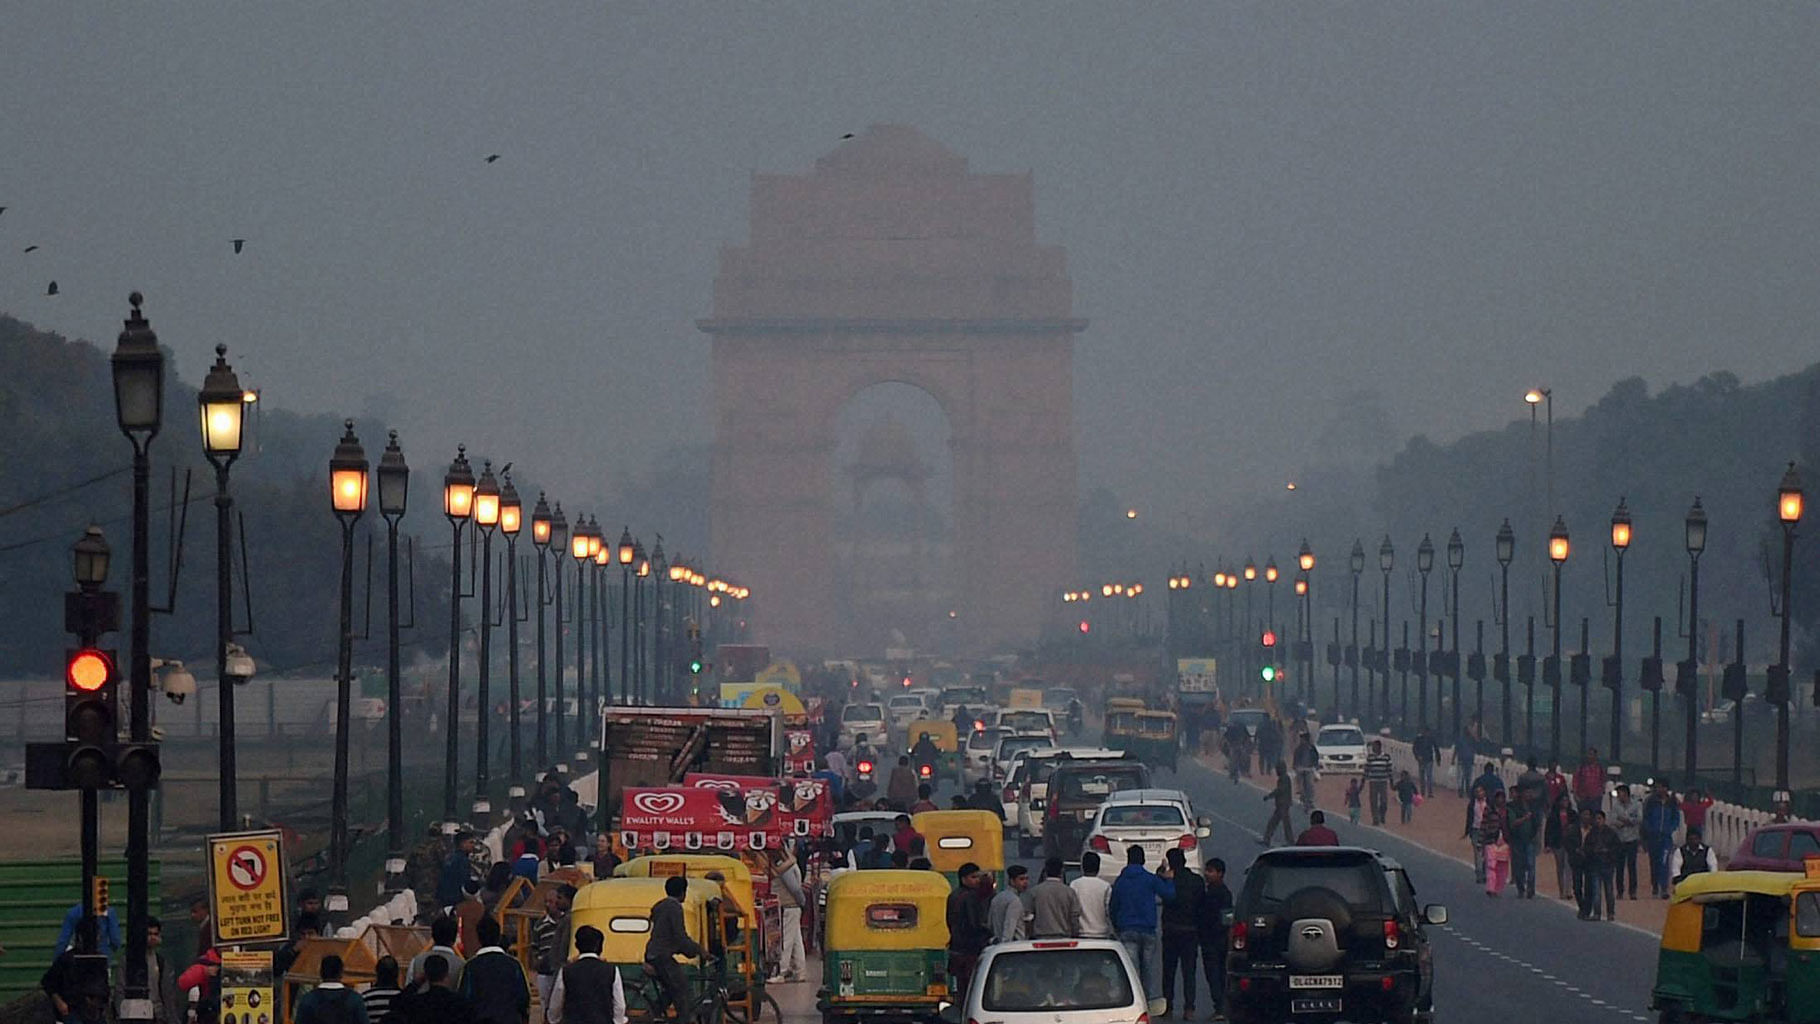 दिल्ली में बढ़ते प्रदूषण की रोकथाम के लिए पब्लिक ट्रांसपोर्ट को बढ़ावा देना जरूरी